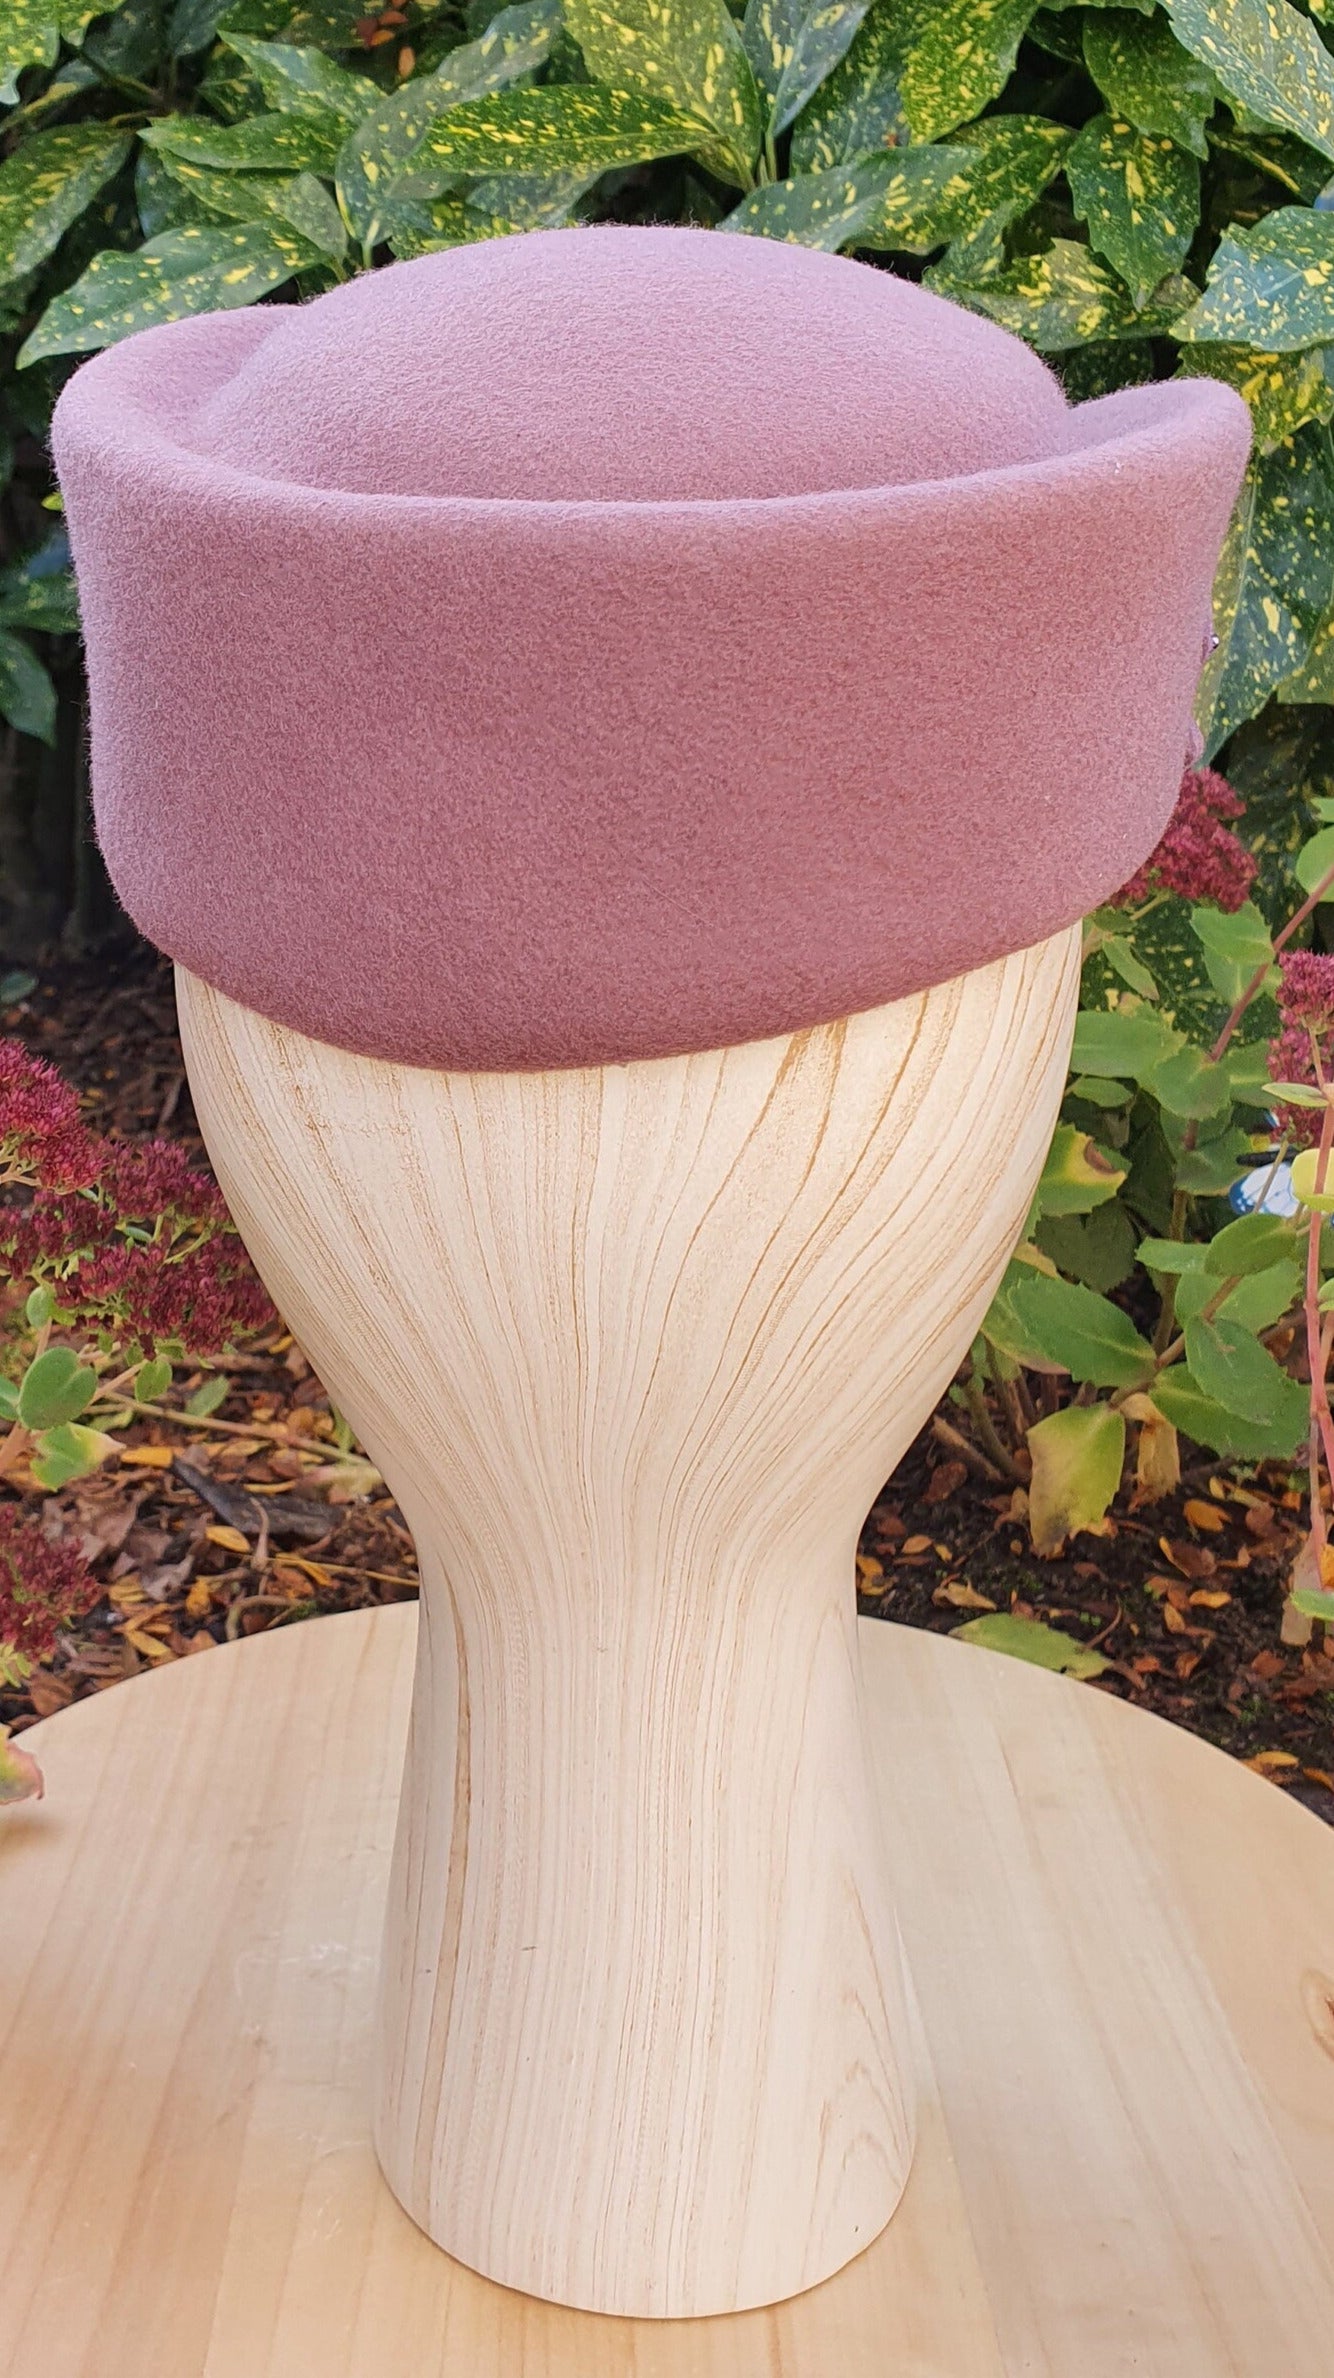 Elegante sombrero de fieltro para mujer - Pastillero morado con ala ancha y plana - Hecho a mano con organza y cuentas